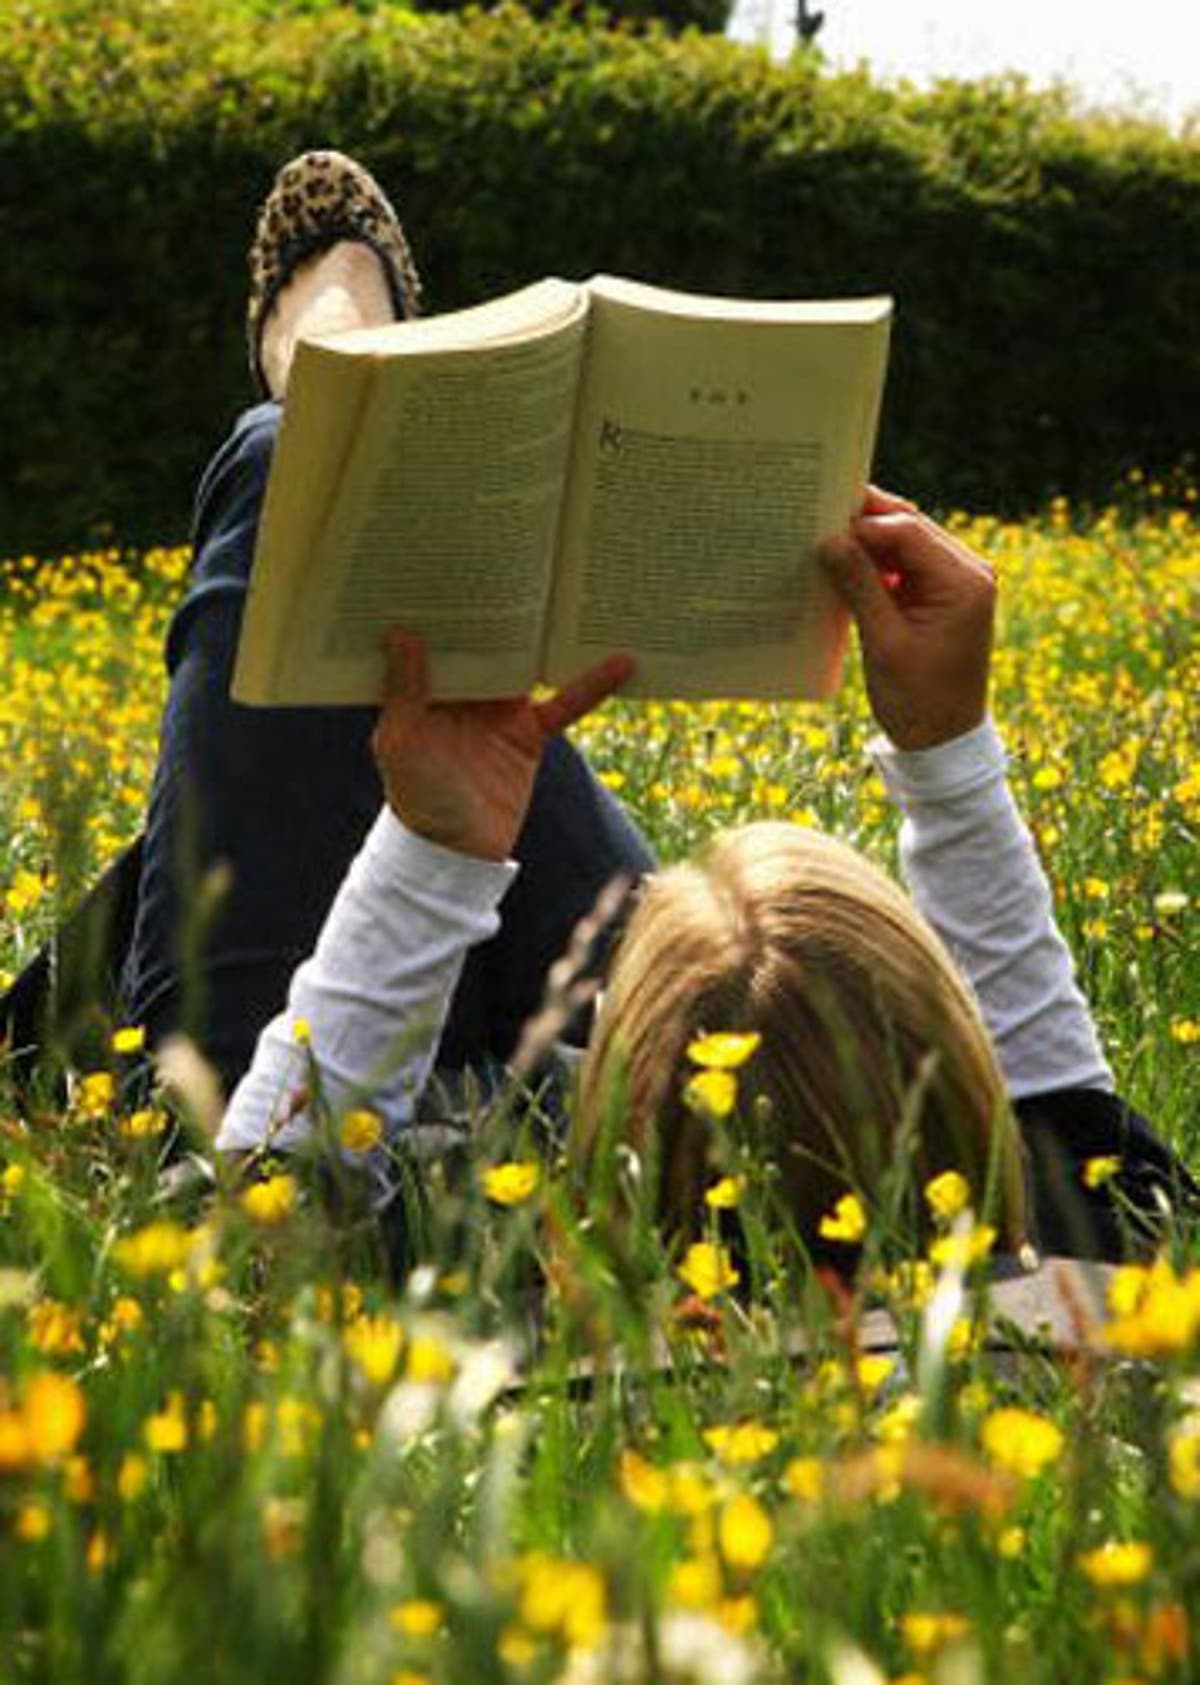 Конкурс чтения книг. Чтение на природе. Чтение книг. Лето с книгой. Фотосессия с книгой на природе.